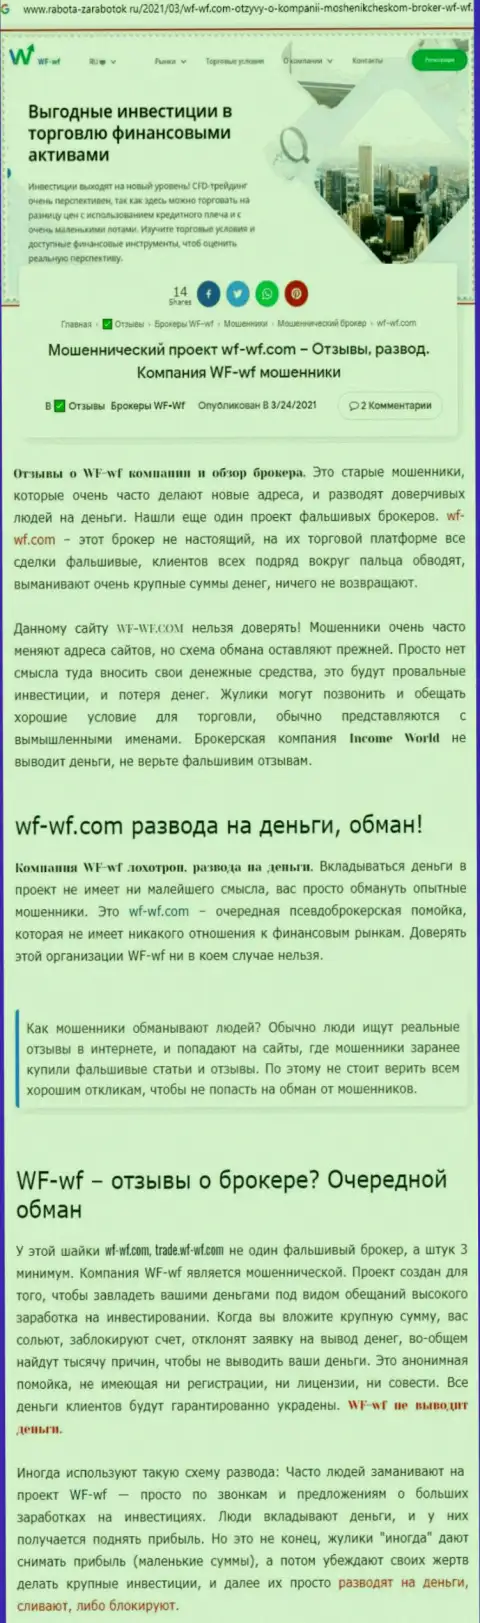 Публикация с разоблачением схем мошеннических комбинаций ВФ ВФ - это РАЗВОДИЛЫ !!!